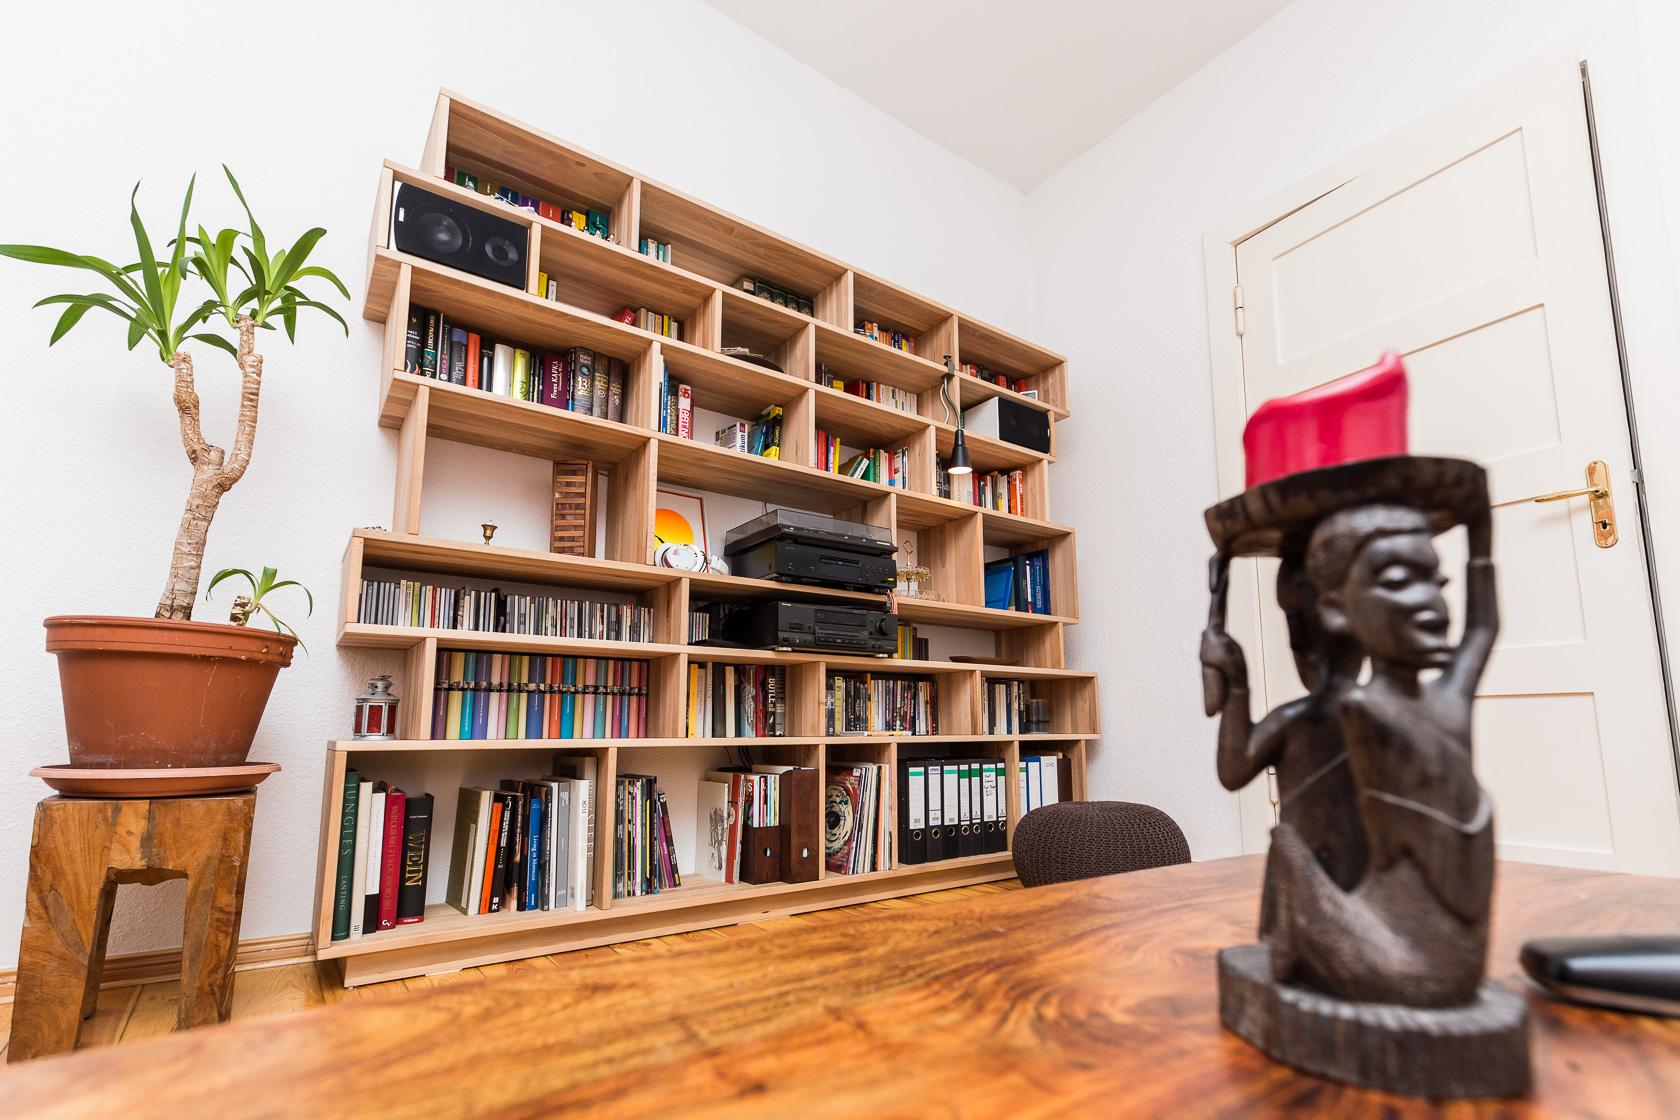 Massives Wohnzimmerregal aus Kernbuche #holzmöbel #regal #bücherregal #wohnzimmer ©Pickawood GmbH